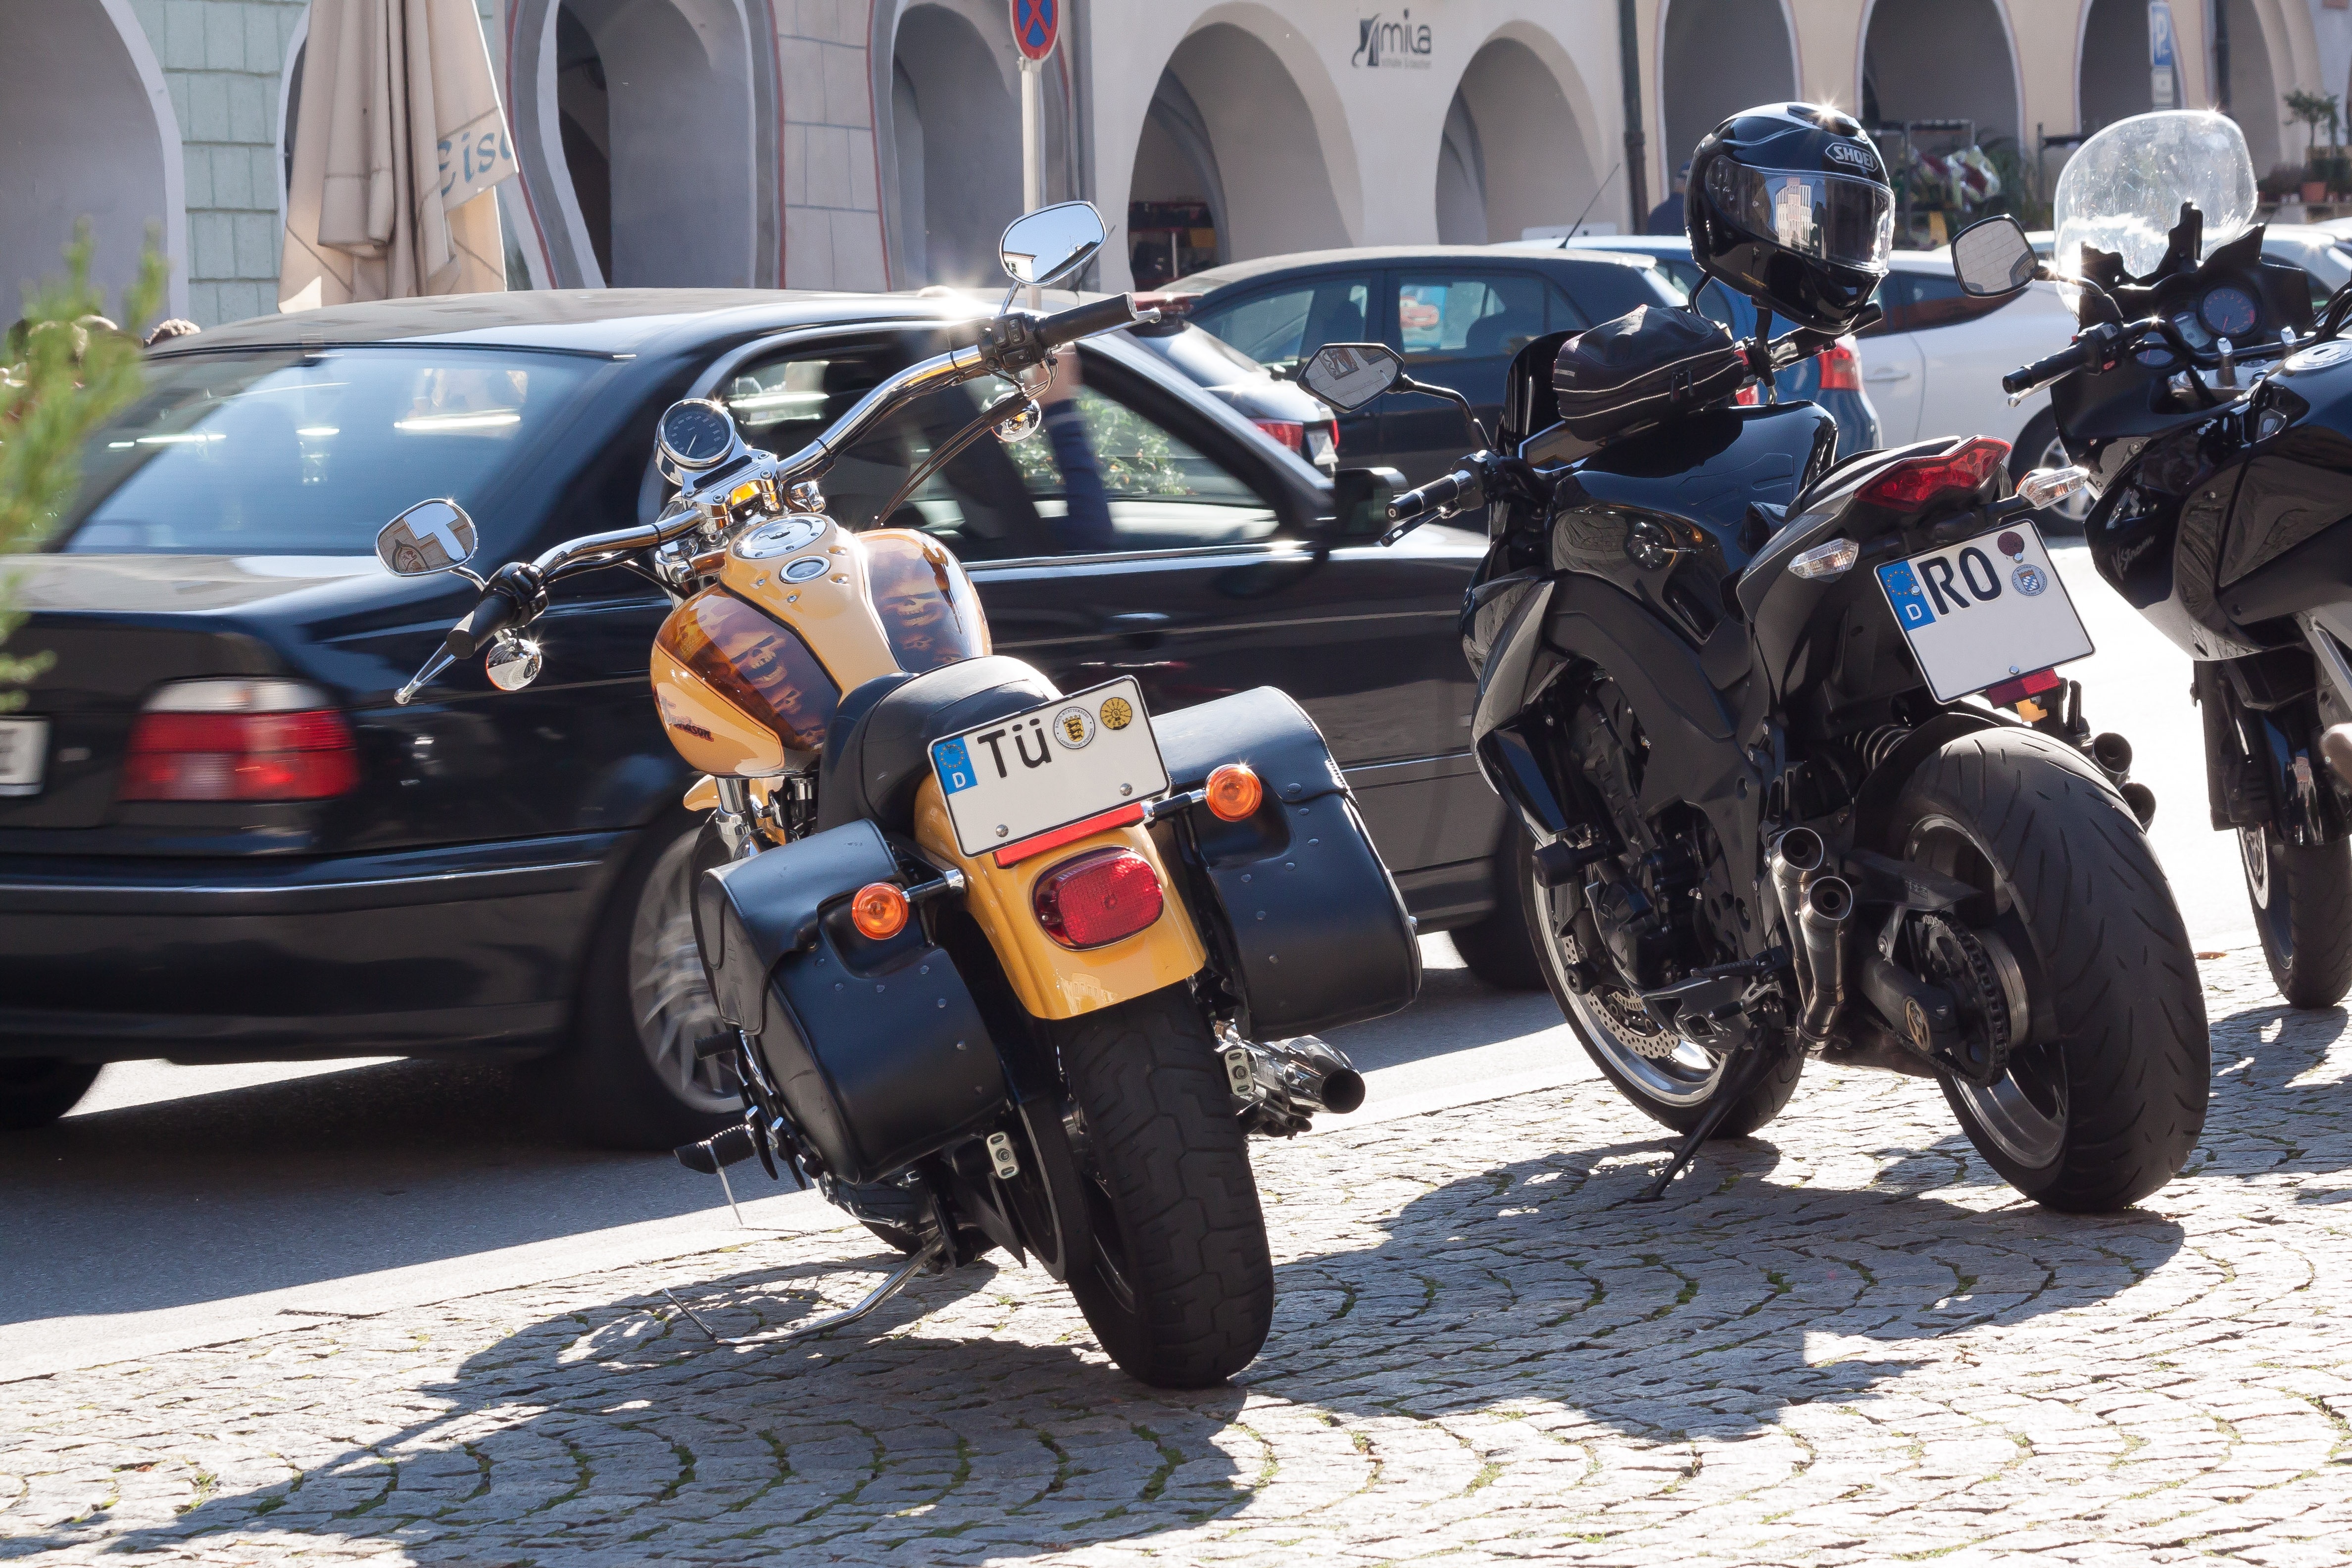 yellow touring motorcycle, black yamaha tsx and black kawasaki bajaj pulsar